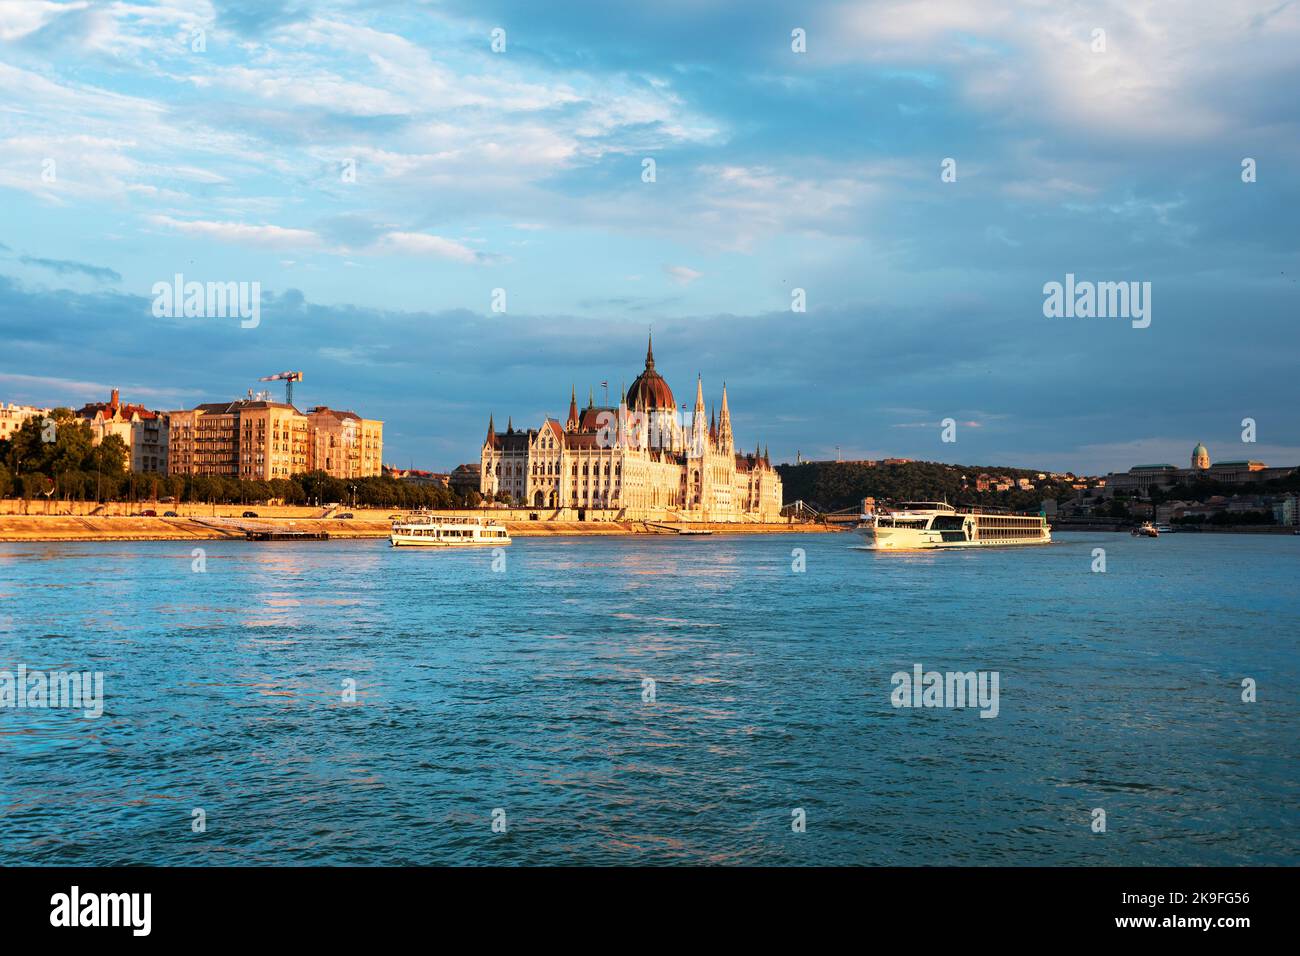 Edificio del Parlamento húngaro a lo largo del río Danubio al amanecer con colorido nubes cielo Foto de stock